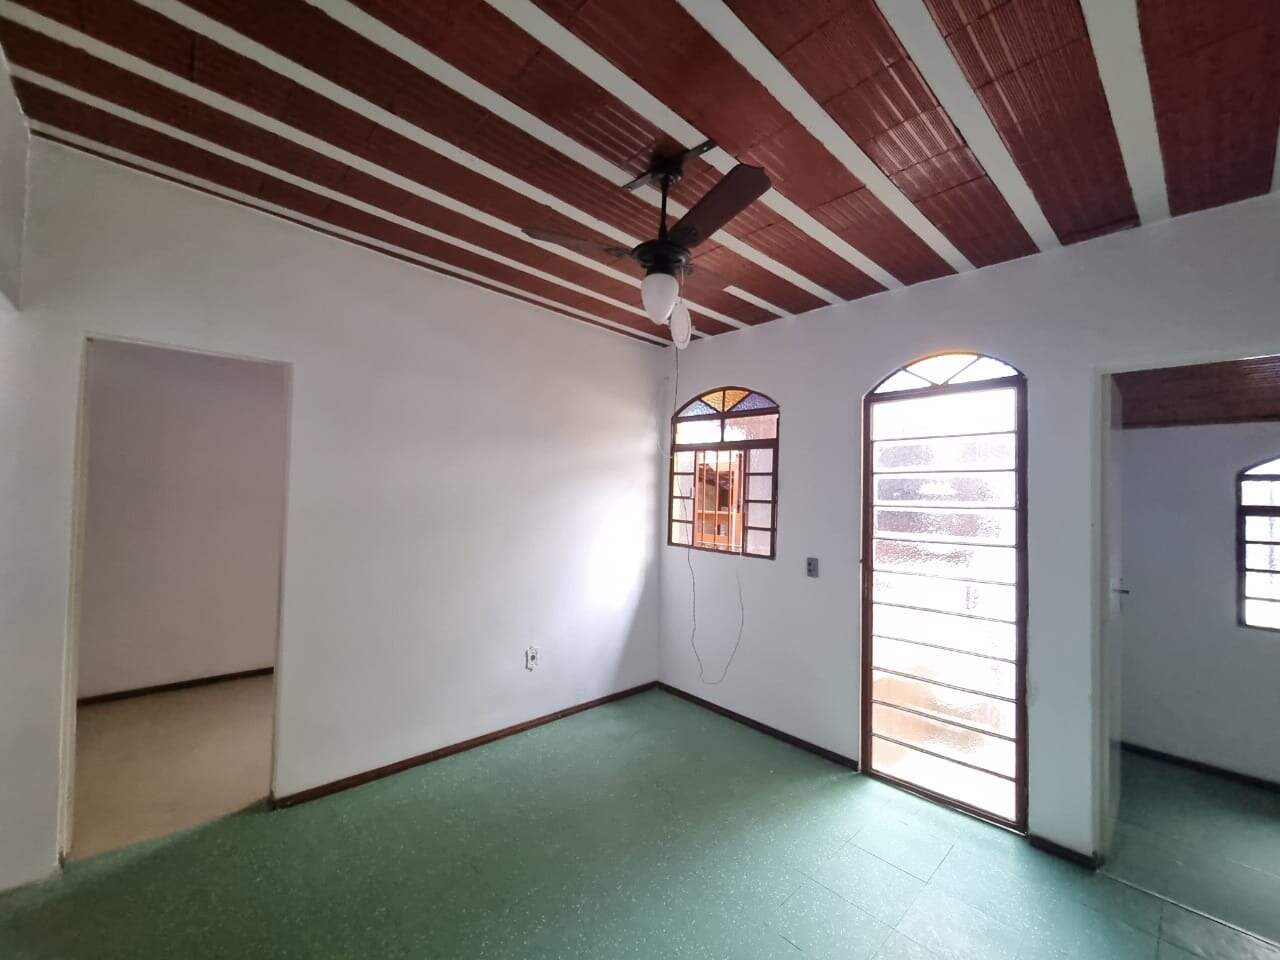 Imagem do imóvel Casa para locação 3 quartos, 10 vagas, Havai - Belo Horizonte/MG